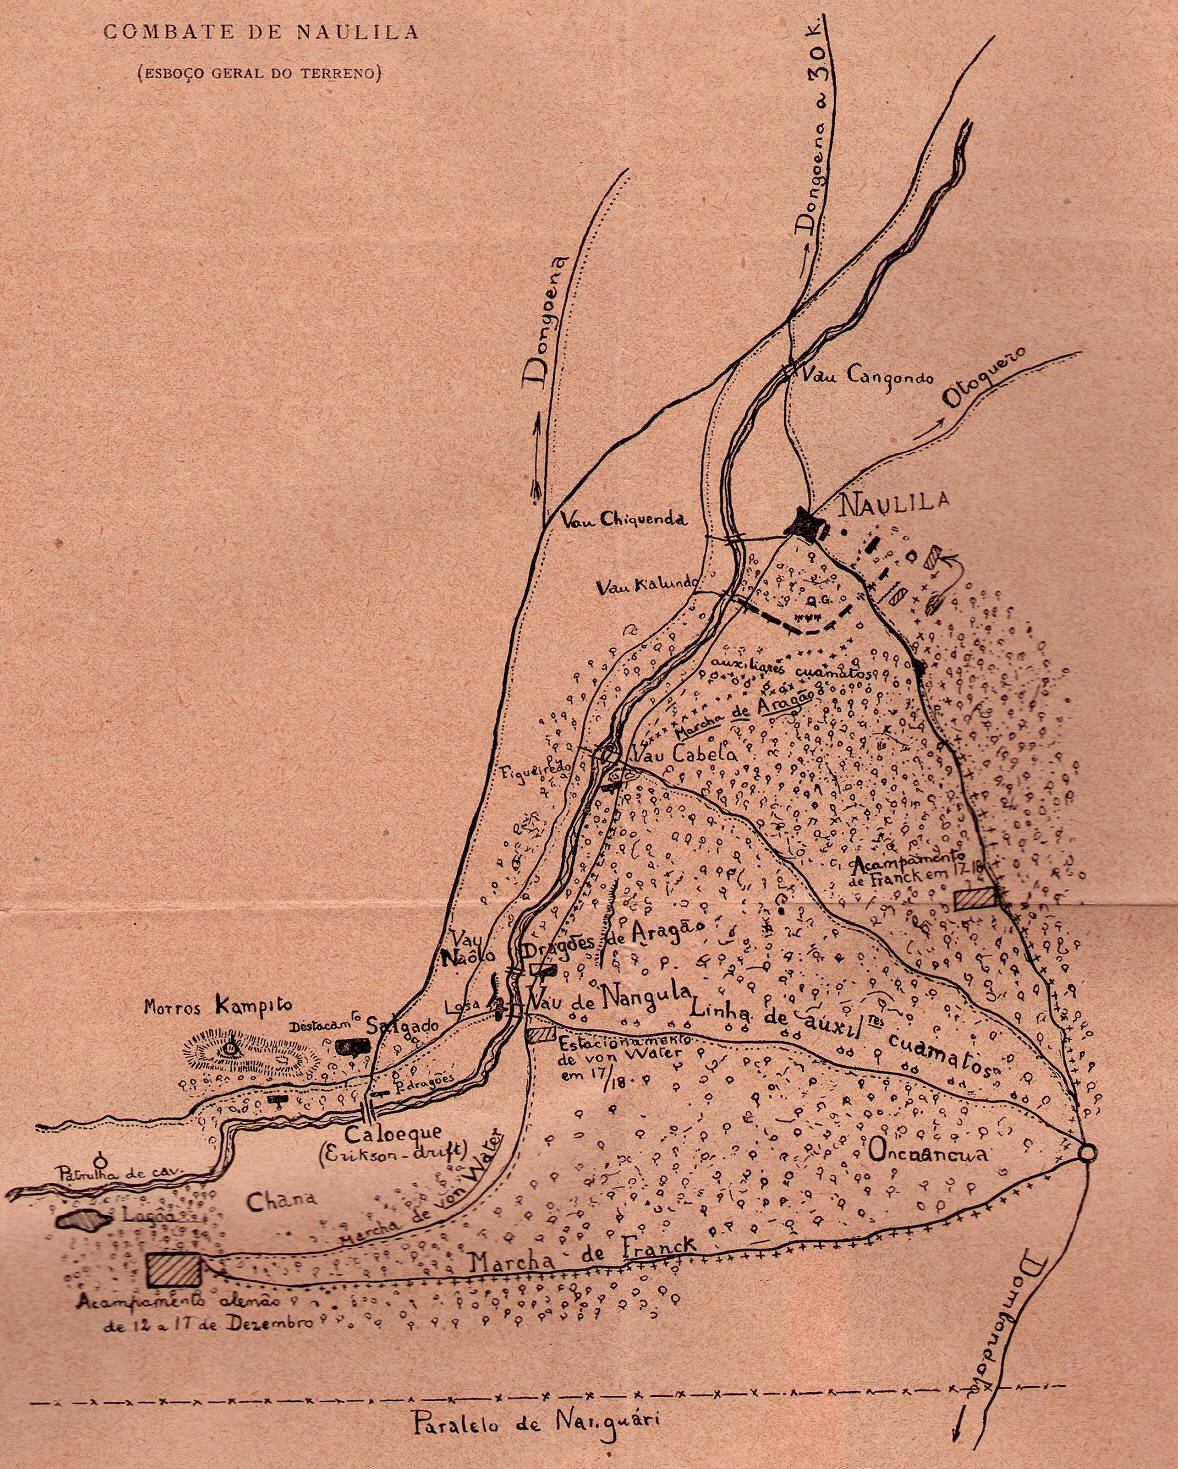 Mapa do Combate de Naulila. Casimiro, Augusto (1922), "Naulila"